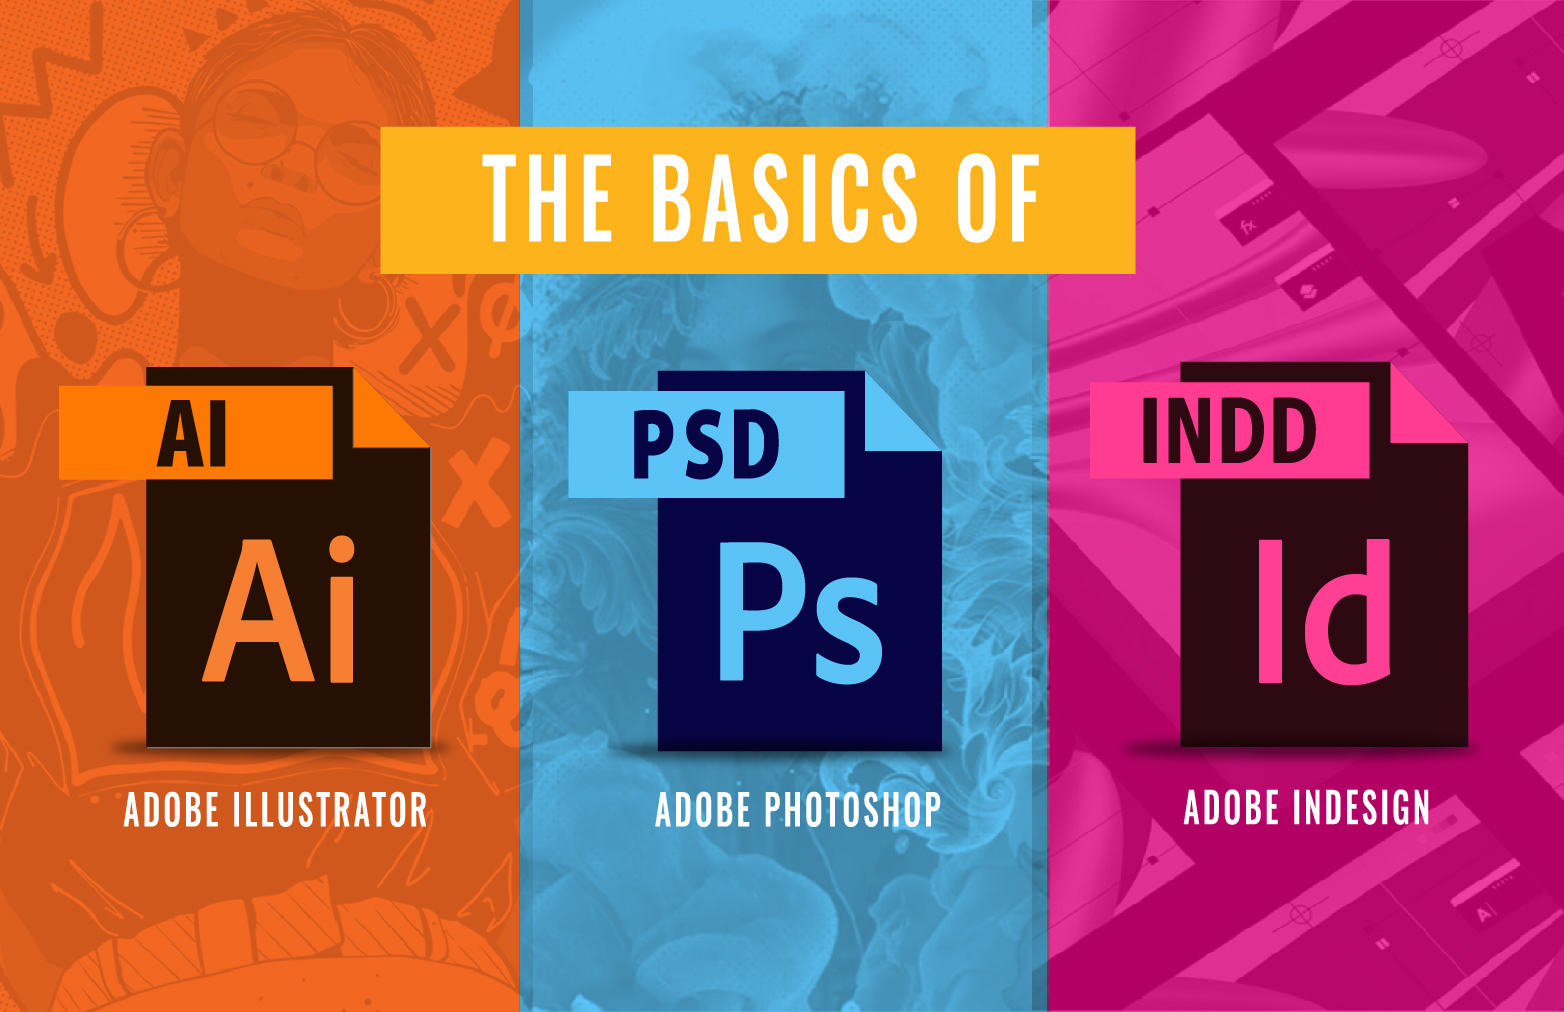 Learn Adobe Illustrator, Photoshop, Adobe Indesign